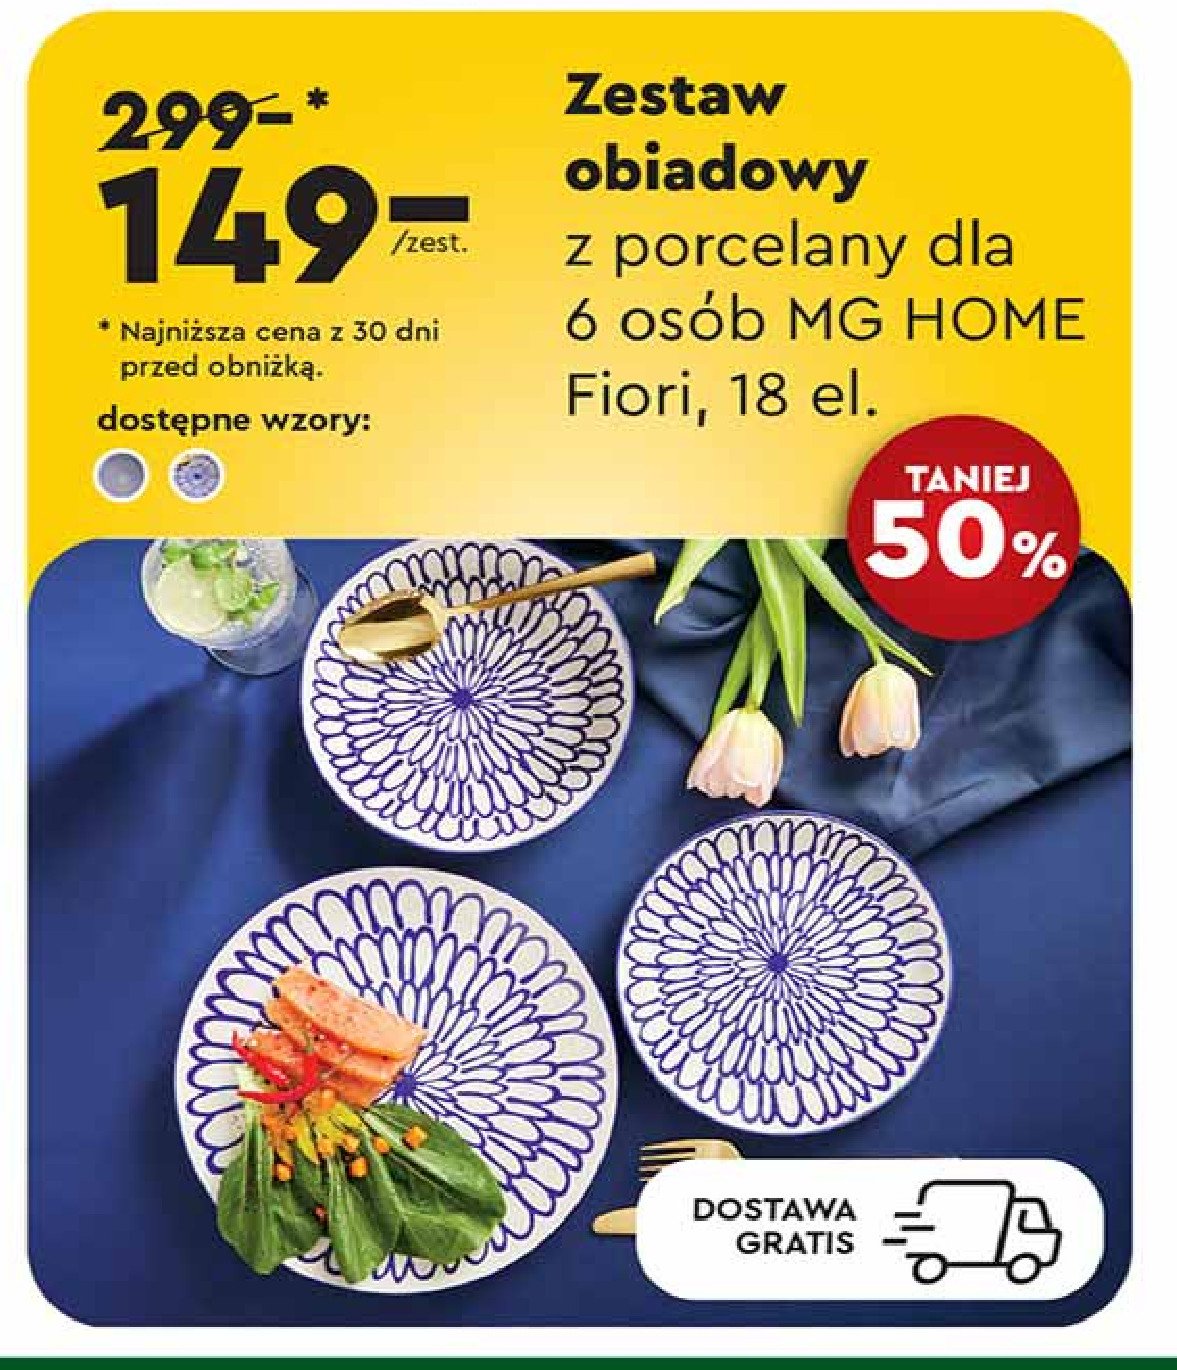 Zestaw porcelany fiori Mg home promocja w Biedronka